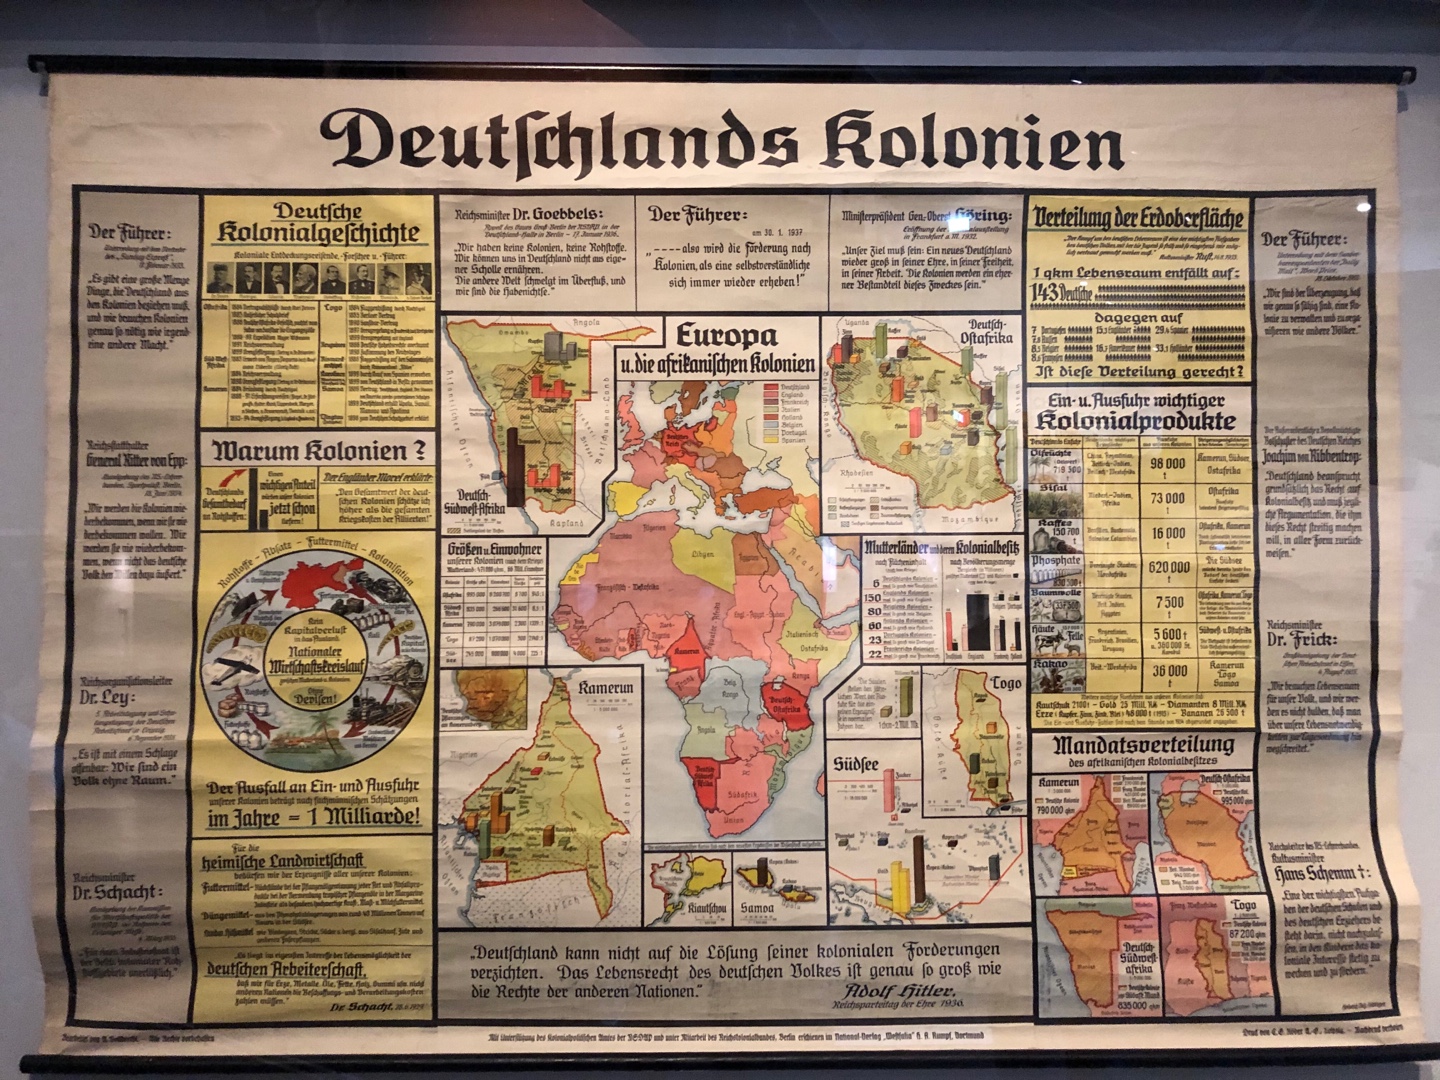 <메인 전시 중 하나인 '베를린 글로벌'에 전시된 독일 식민지 지도>